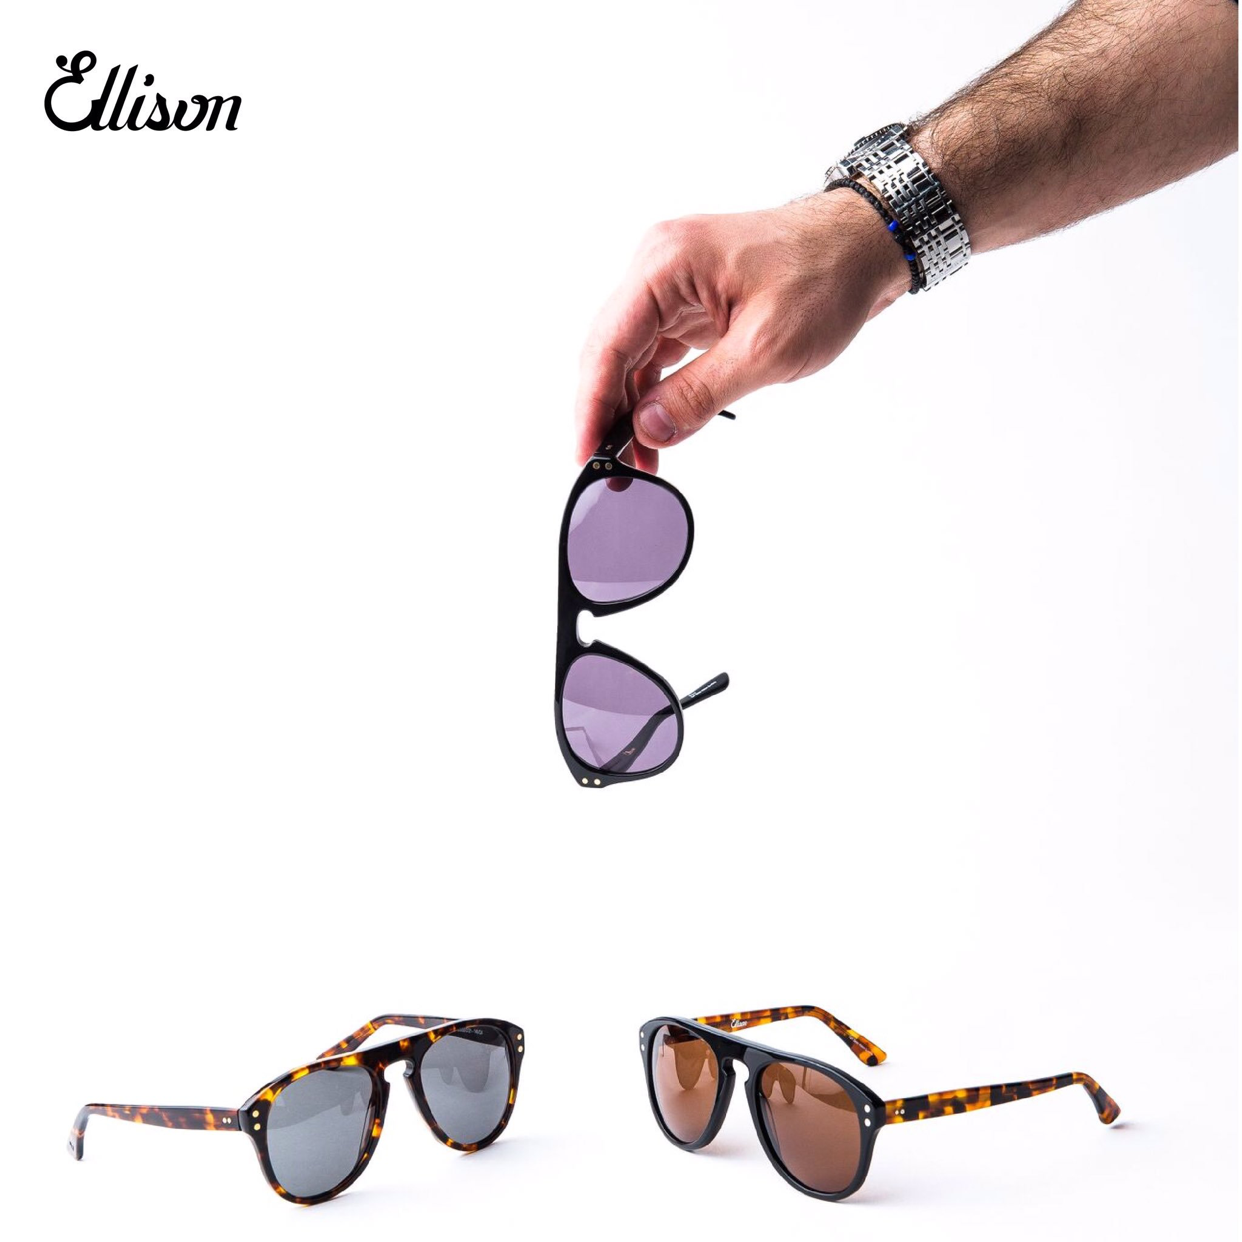 Mauve Boek voorspelling Ellison Eyewear - A lifetime membership for sunglasses 🕶